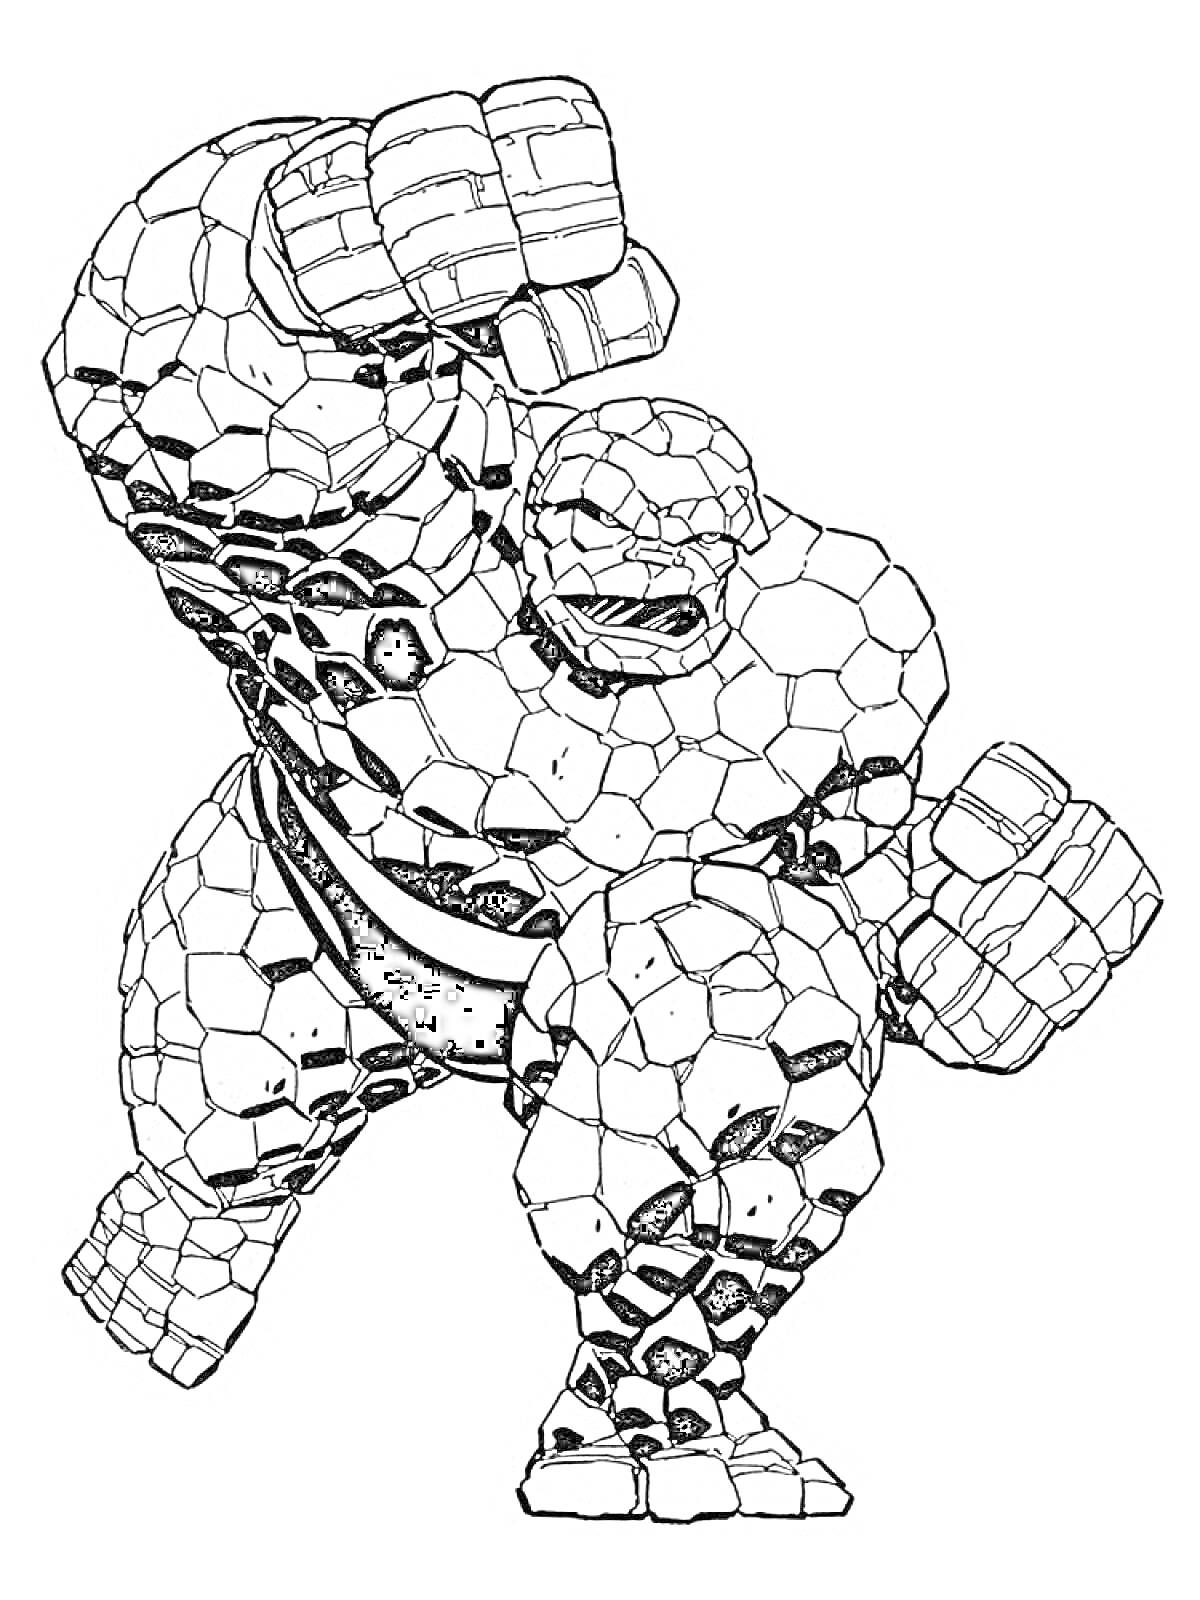 Раскраска Раскраска с персонажем вселенной Марвел в виде каменного человека, в боевой позе с поднятым кулаком и сжатыми руками